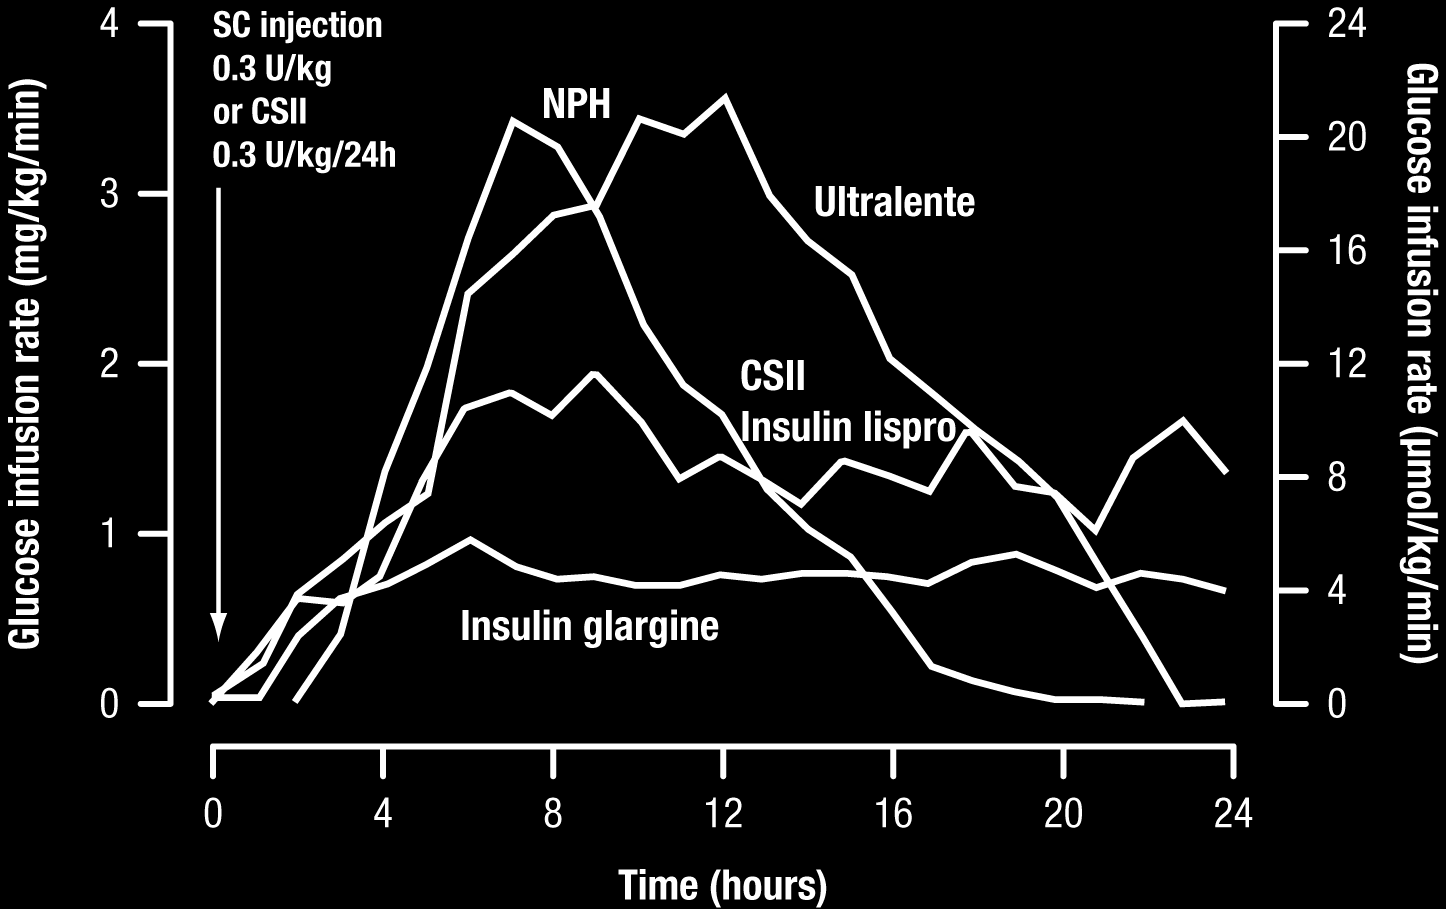 farmacodinamia da Insulina Glargina com três regimes de insulina basal (NPH, ultralenta, IISC) usados frequentemente em doentes com DMT1 Injecção SC